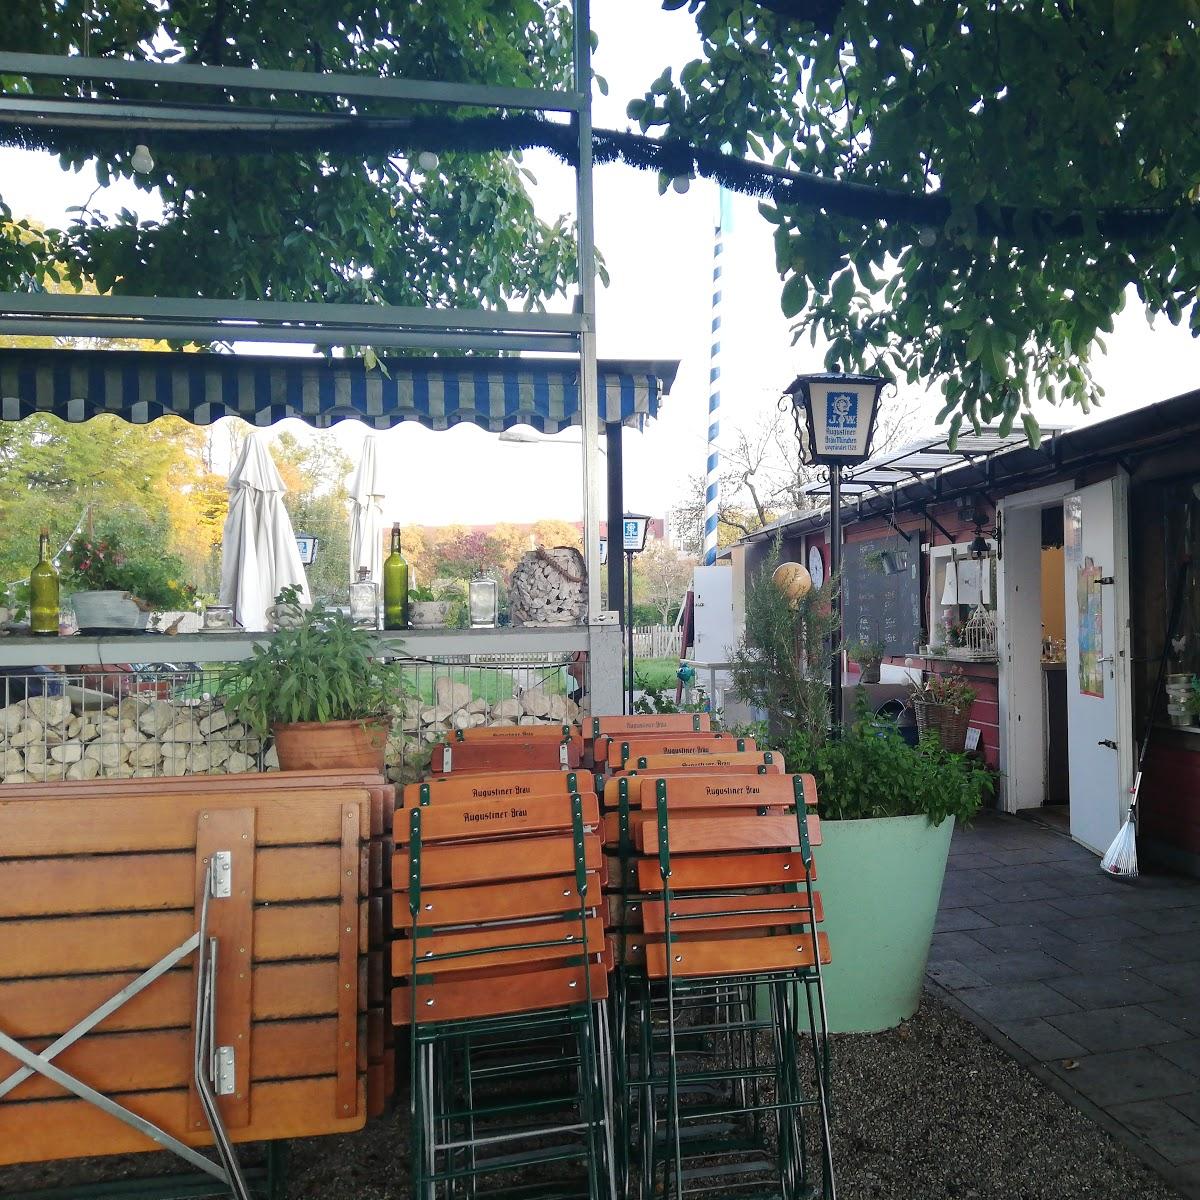 Restaurant "Kleine Villa Flora" in München